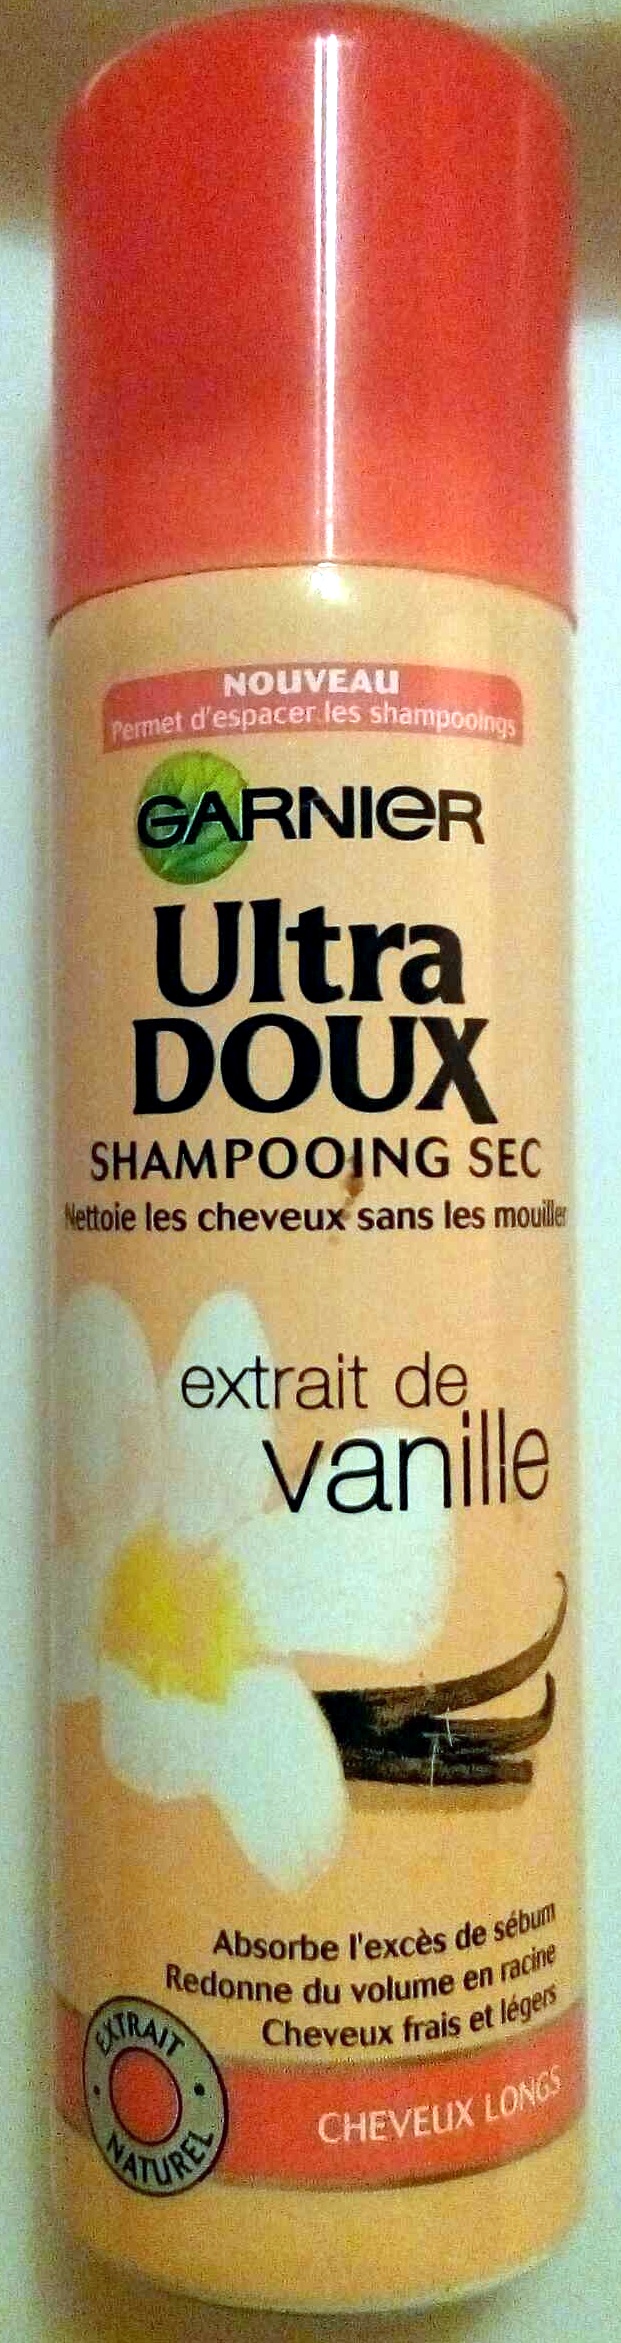 Shampooing sec extrait de vanille - Tuote - fr